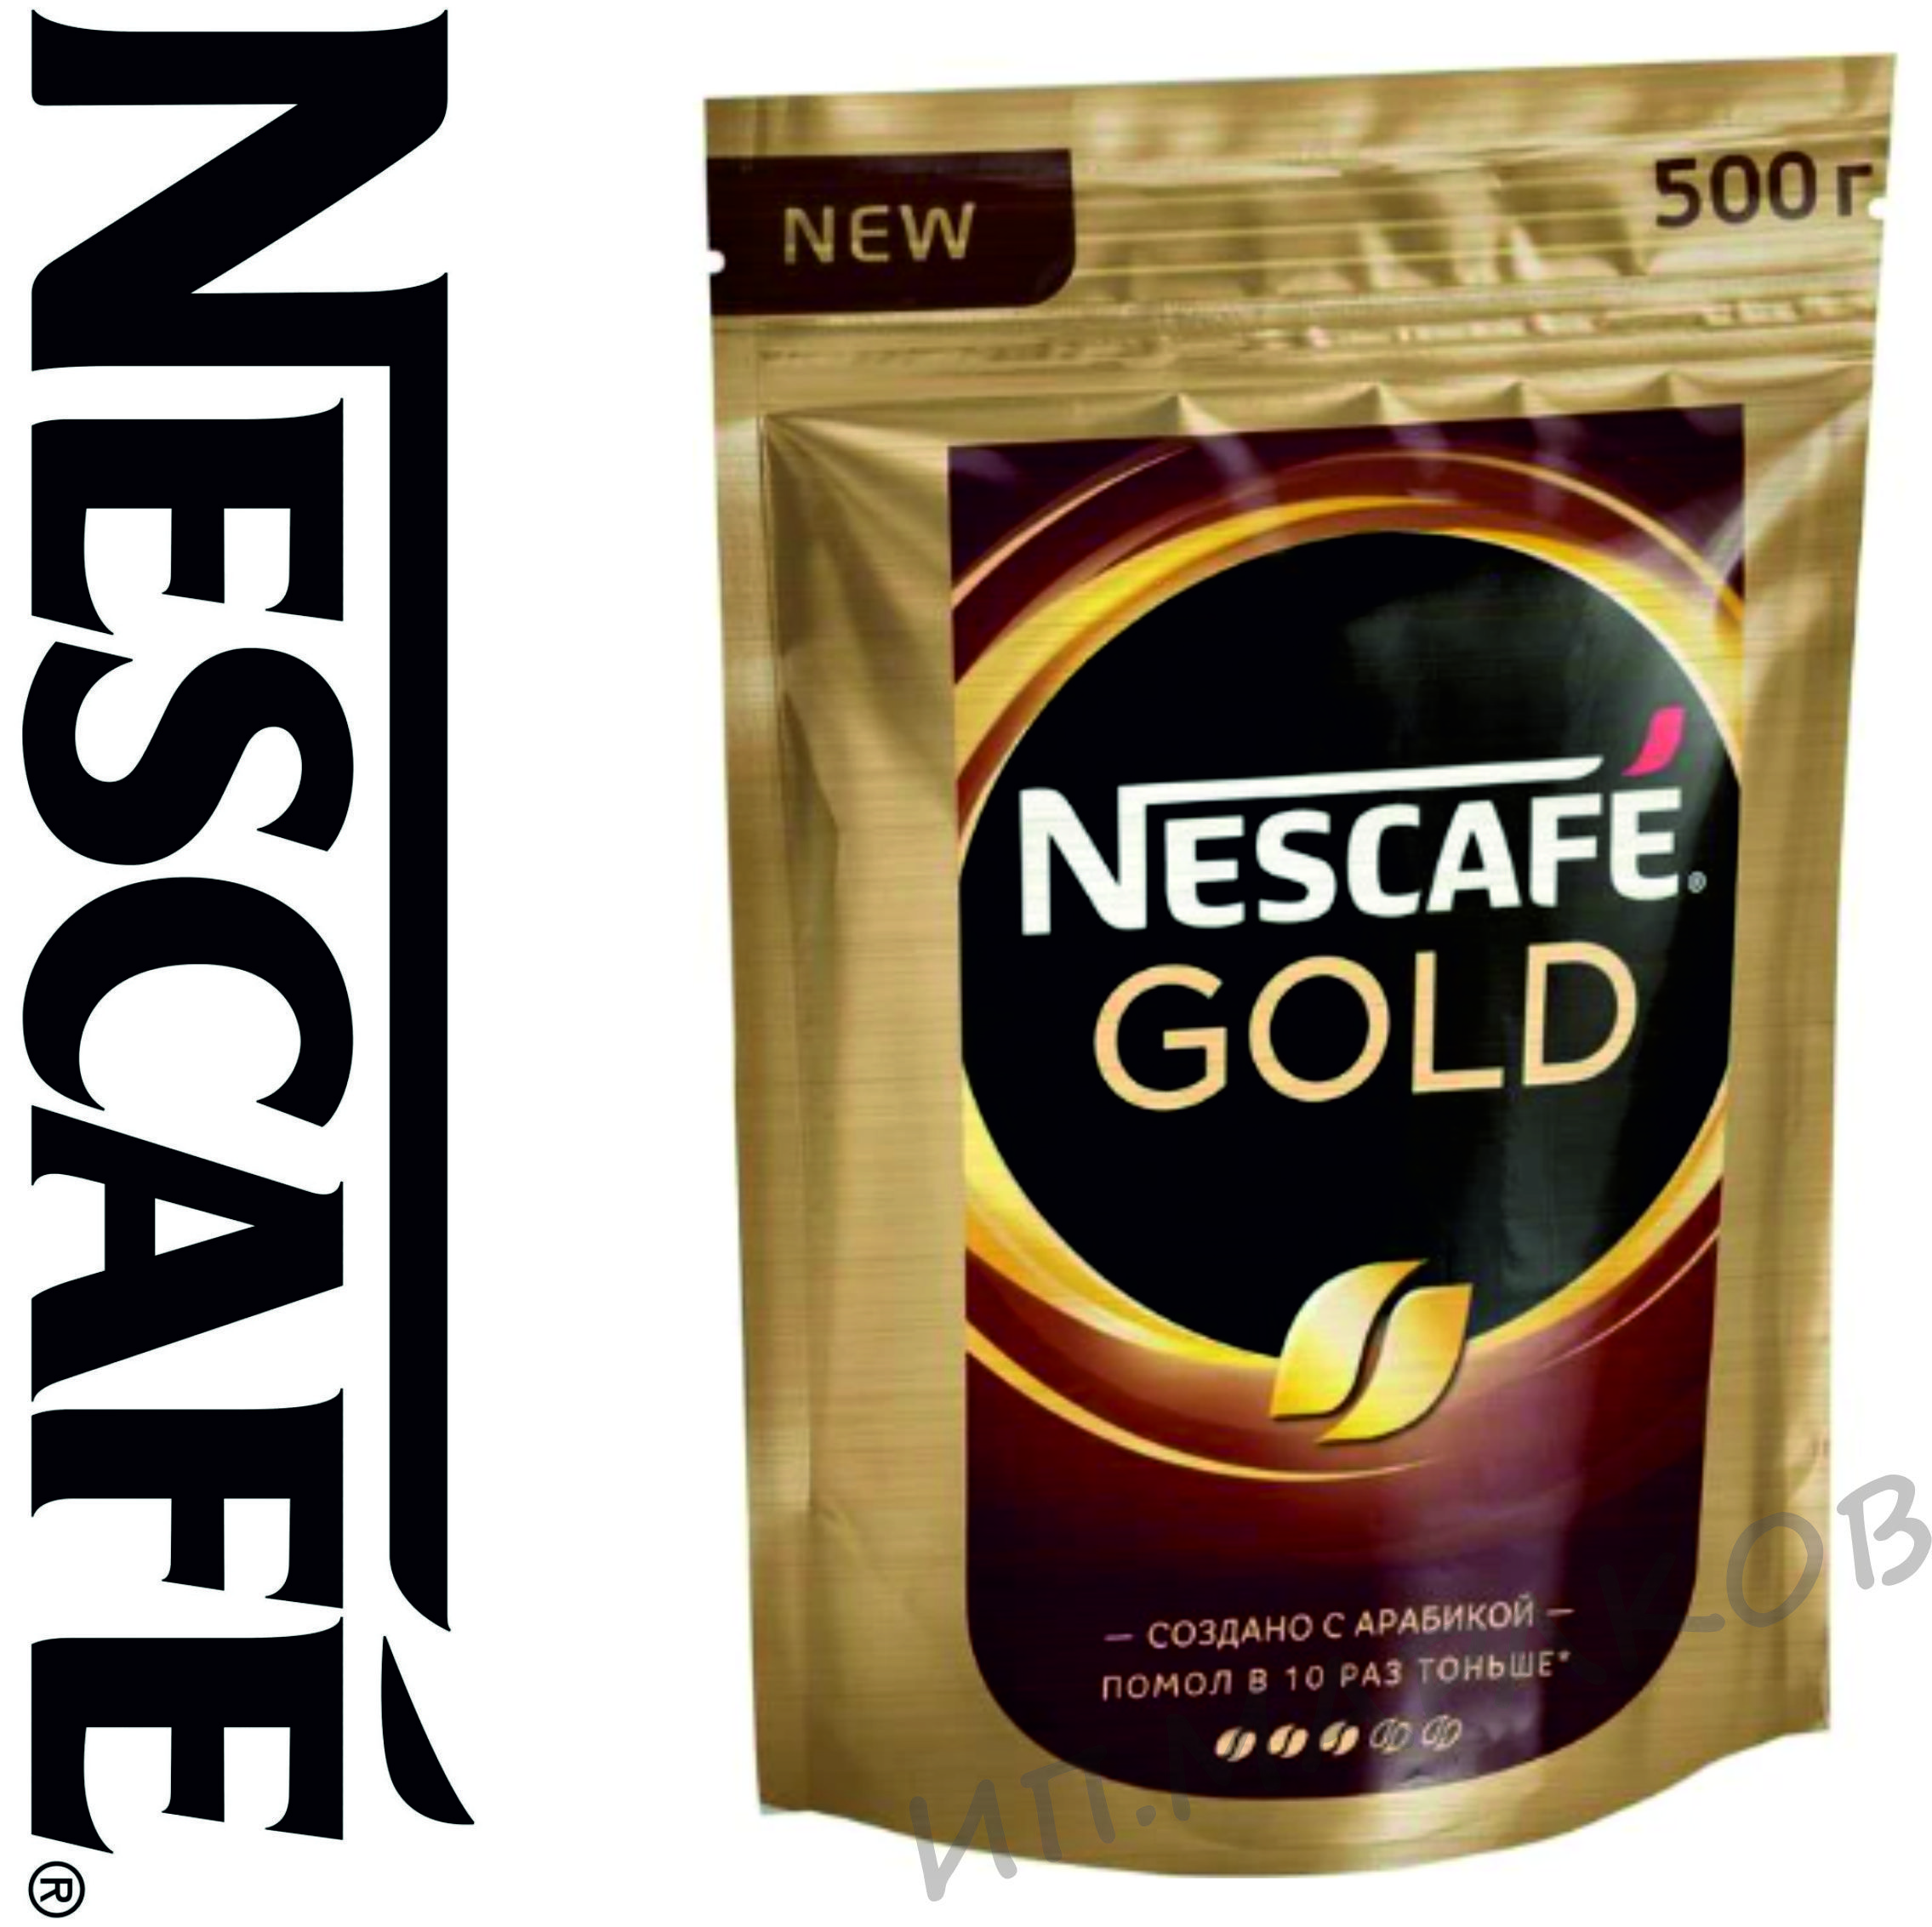 Кофе nescafe gold 500. Кофе Нескафе Голд пакет 320г оборотная сторона упаковки. Нескафе Голд субл 2 гр. Нескафе Голд субл Жар мол 190г.